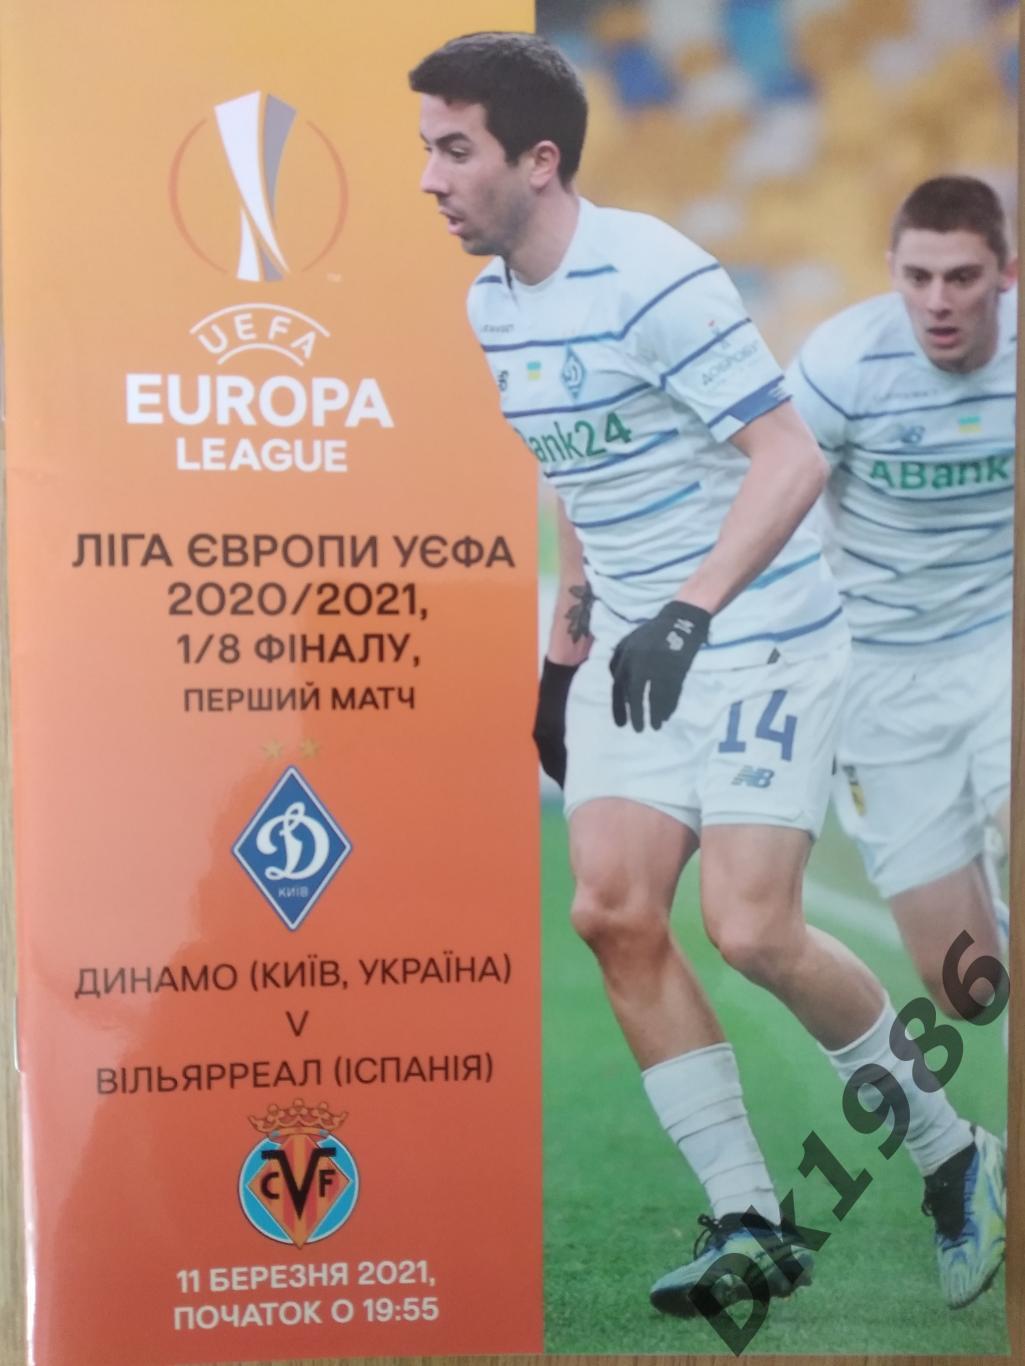 Динамо Київ - Вільярреал 11.03.2021 (офіційна програмка матчу)